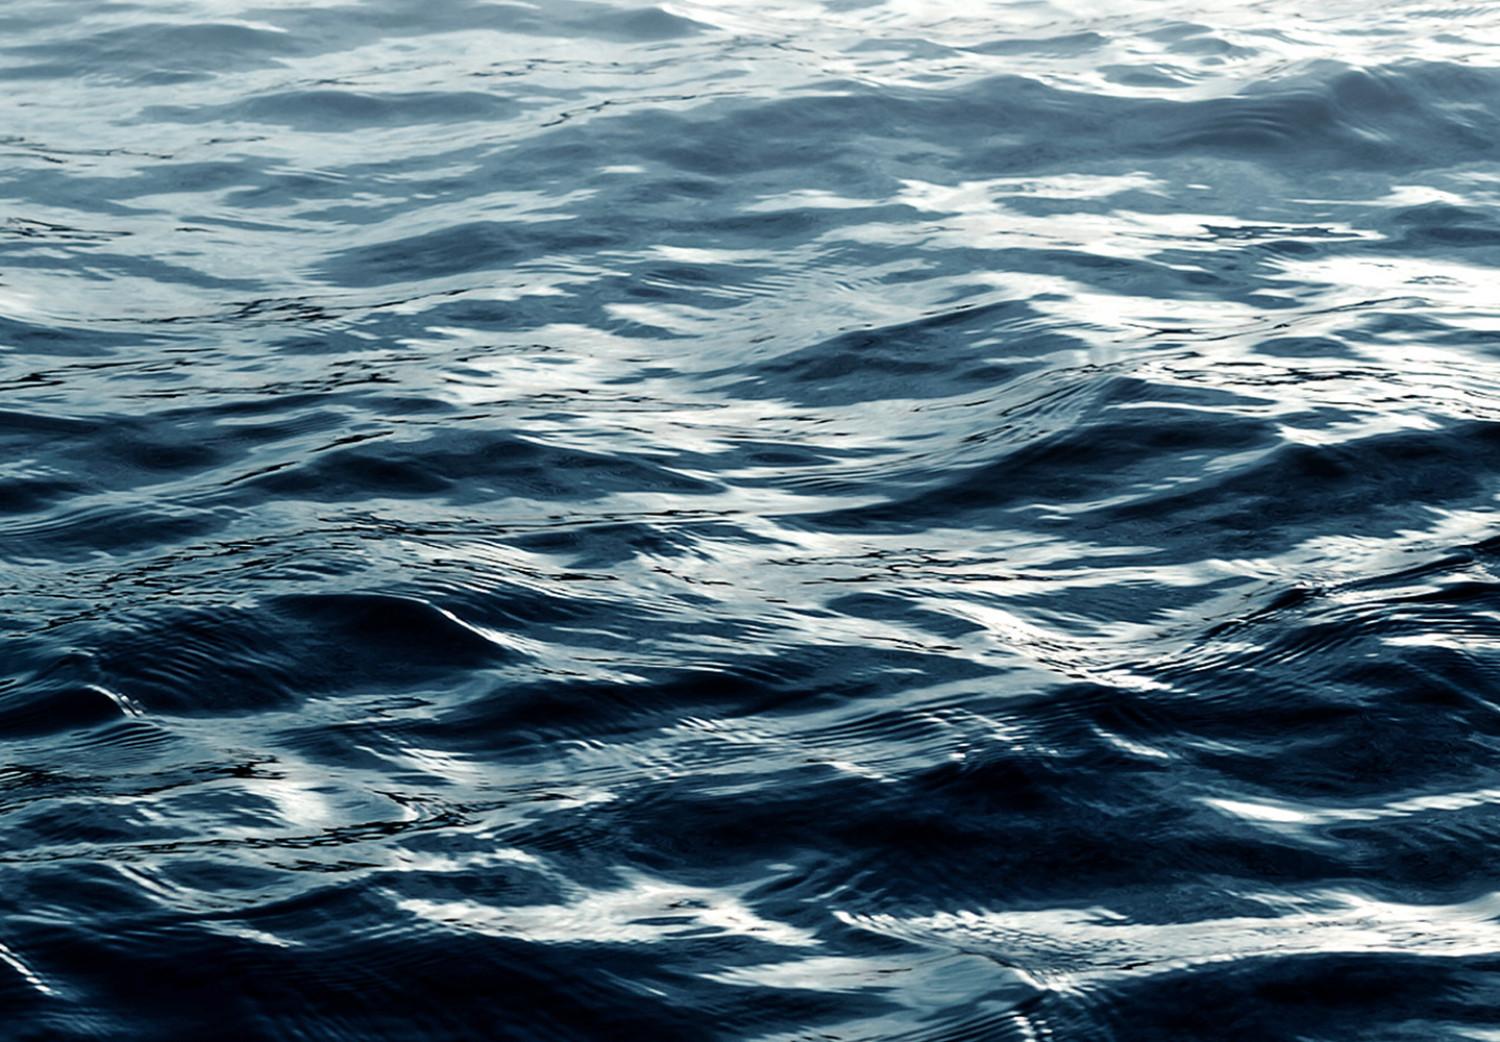 Set de poster Aguas oceánicas - paisaje de olas en el mar sobre fondo de luz blanca